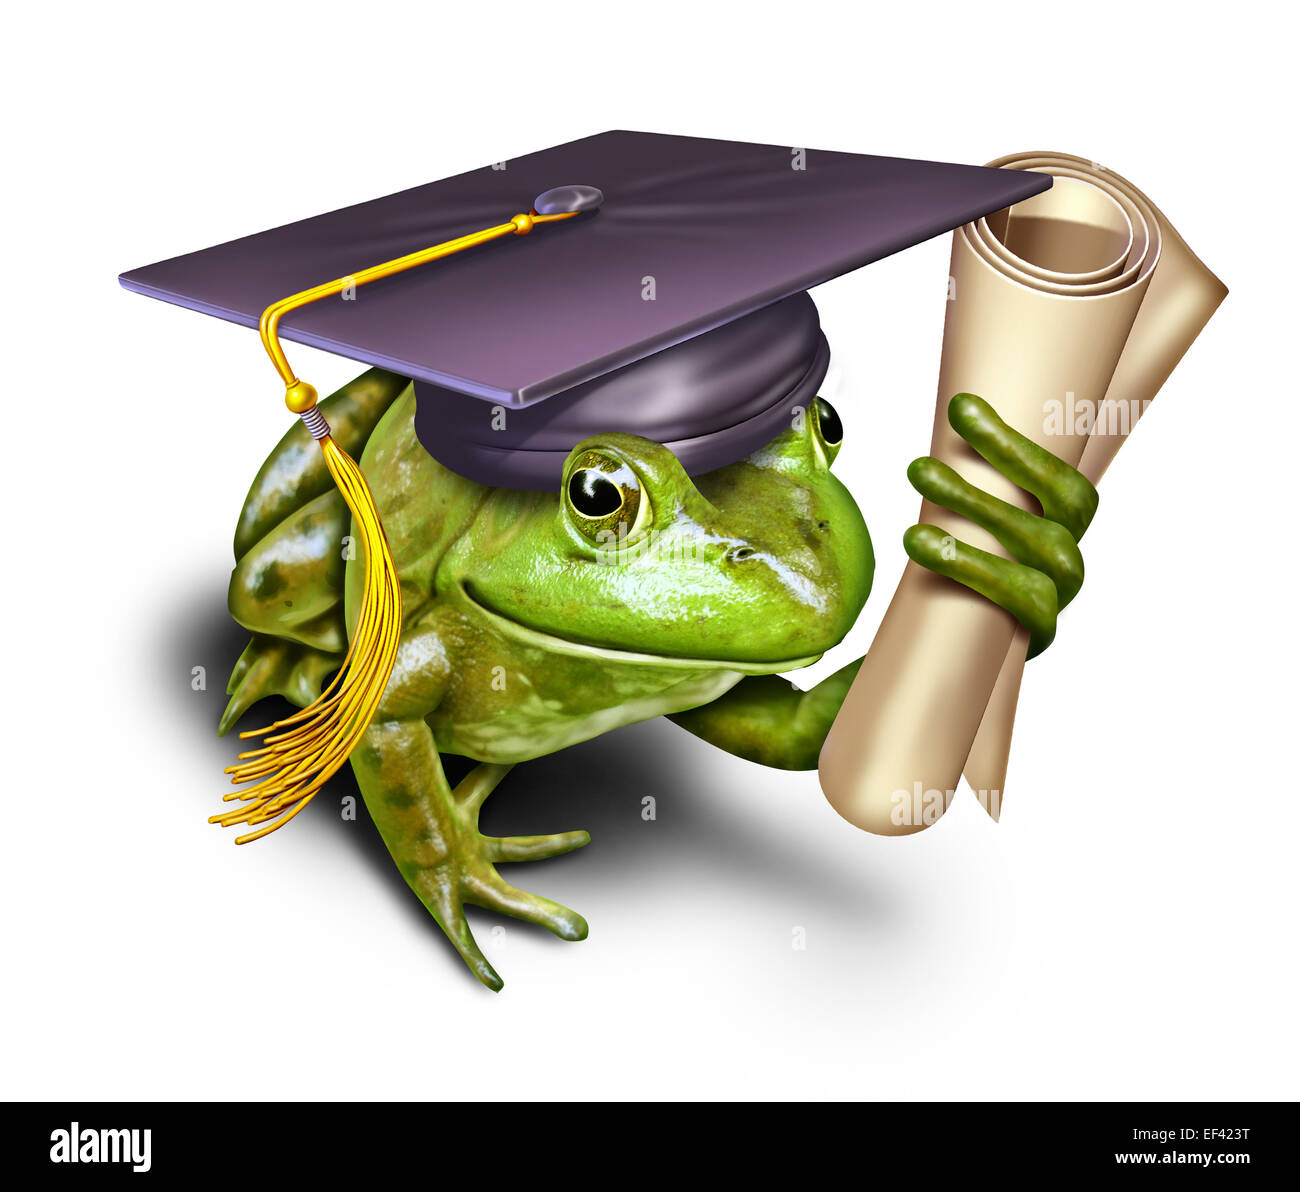 Educazione ambientale come simbolo di una rana verde studente indossando un mortaio di graduazione di trattenimento tappo di una università o un diploma di scuola media superiore come una metafora per l'apprendimento di conservazione e rispetto per la natura. Foto Stock